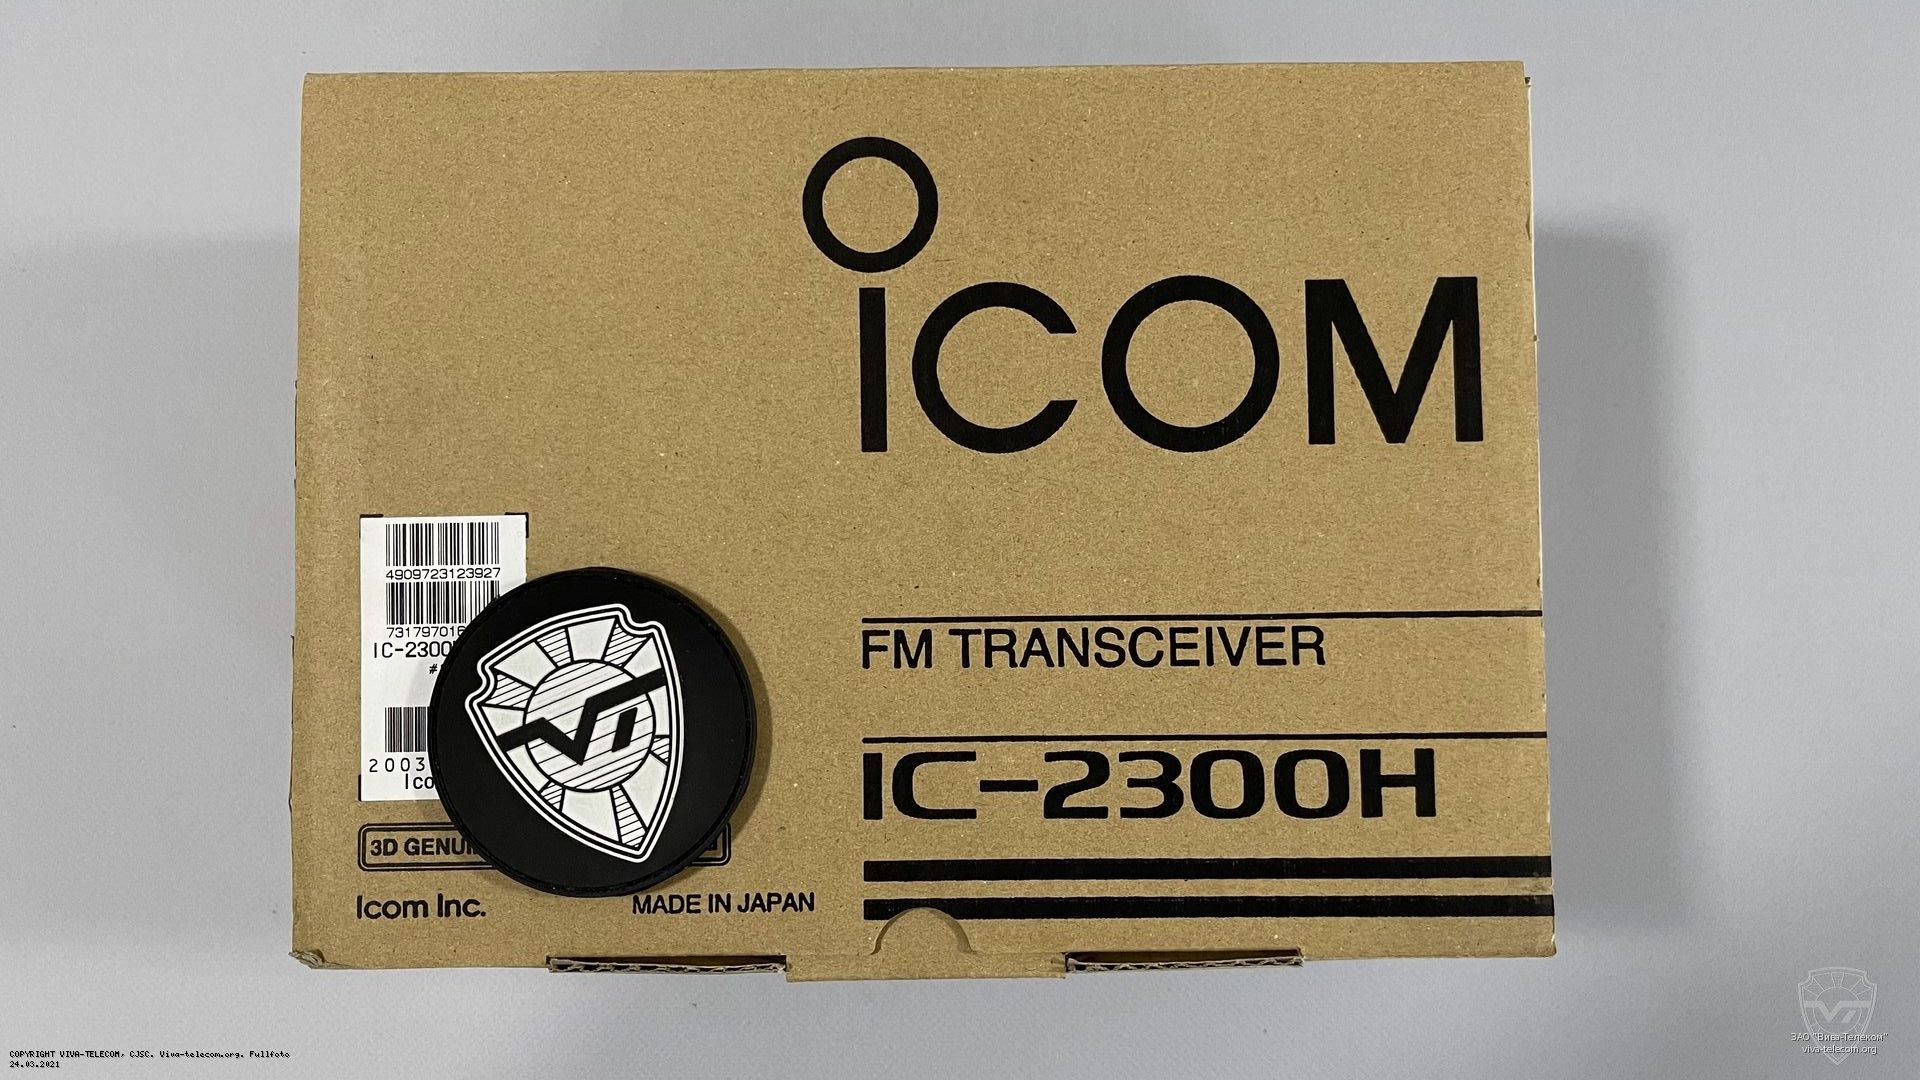   Icom IC-2300H